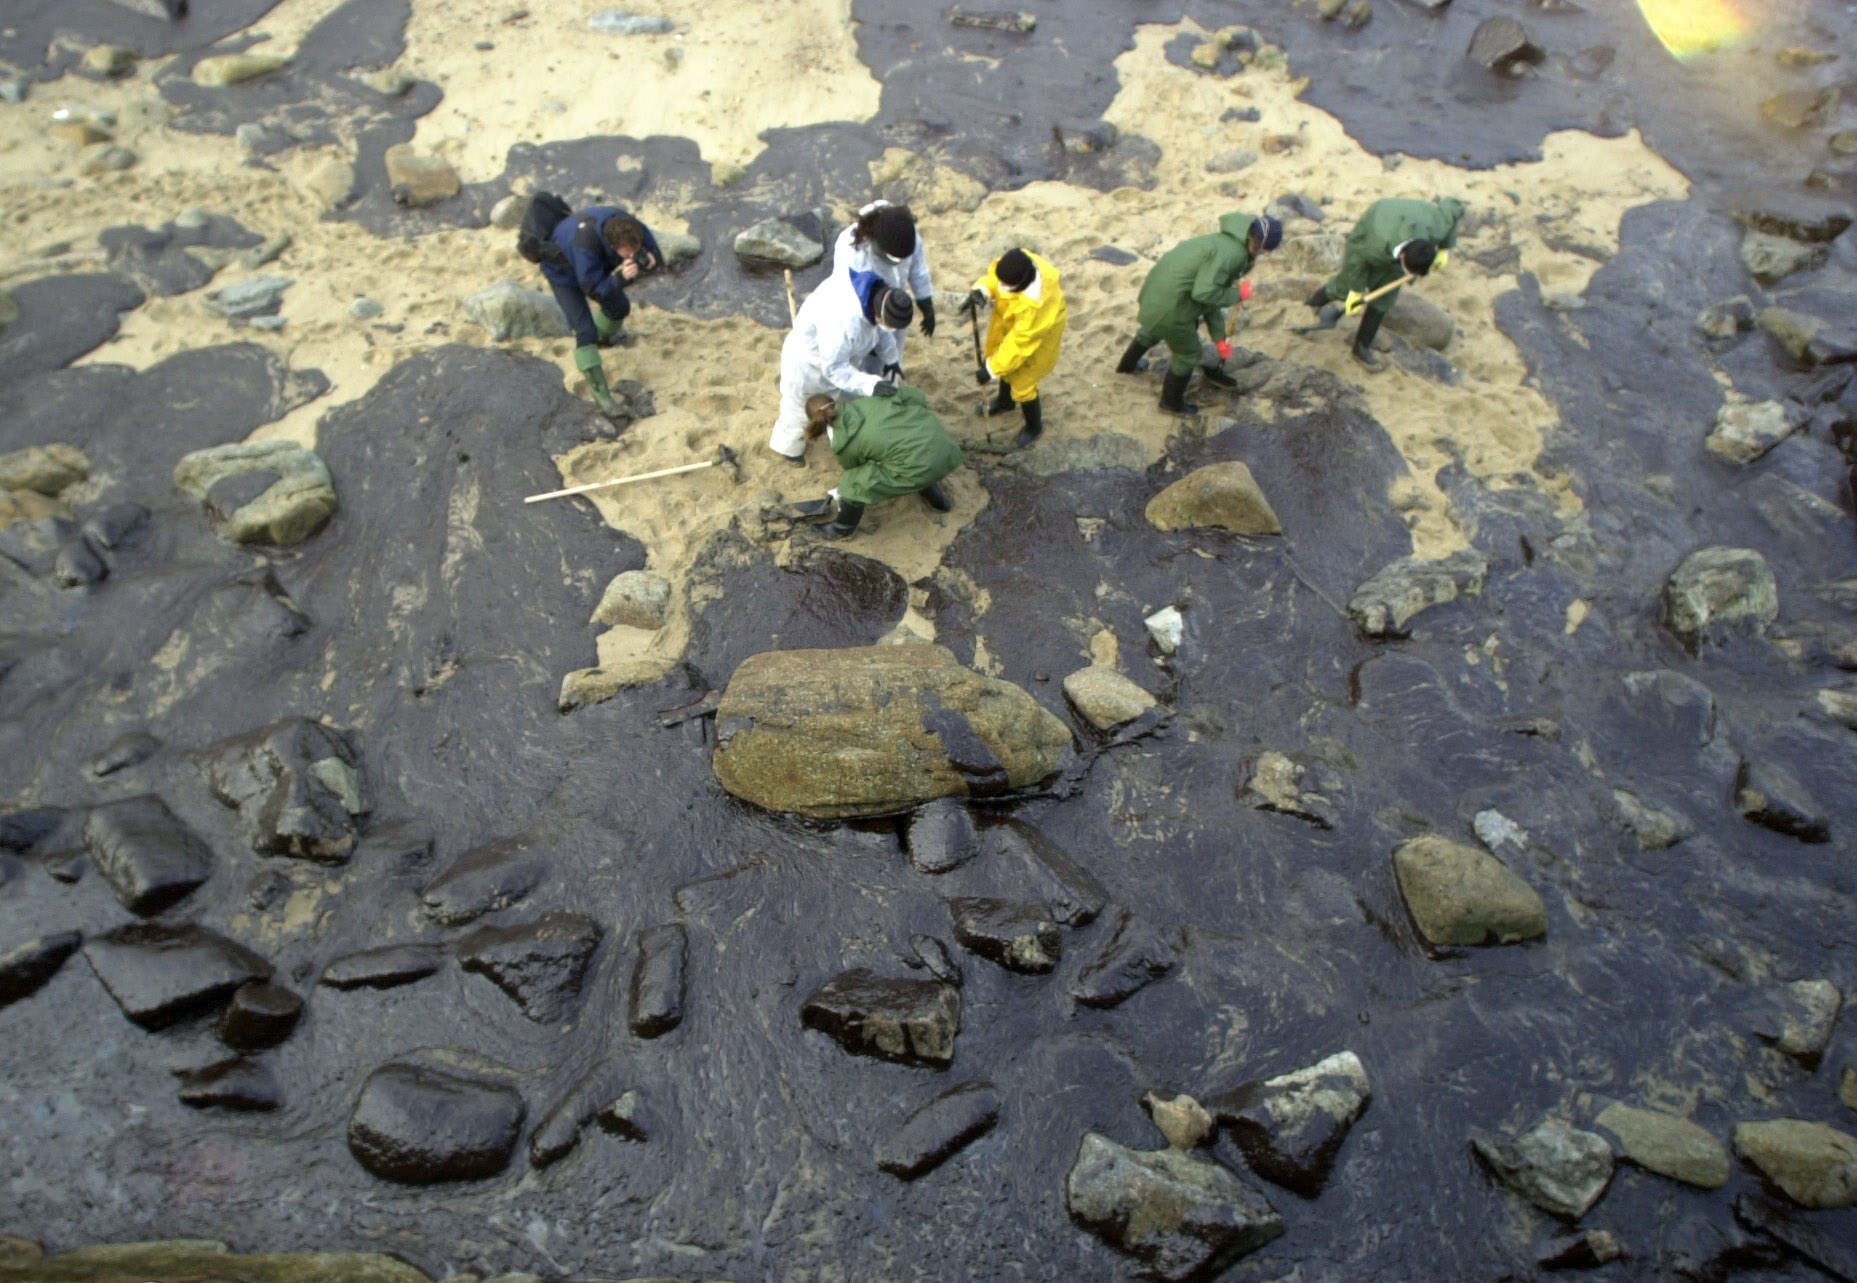 Voluntarios limpiando restos del Prestige en Muxa en 2002.